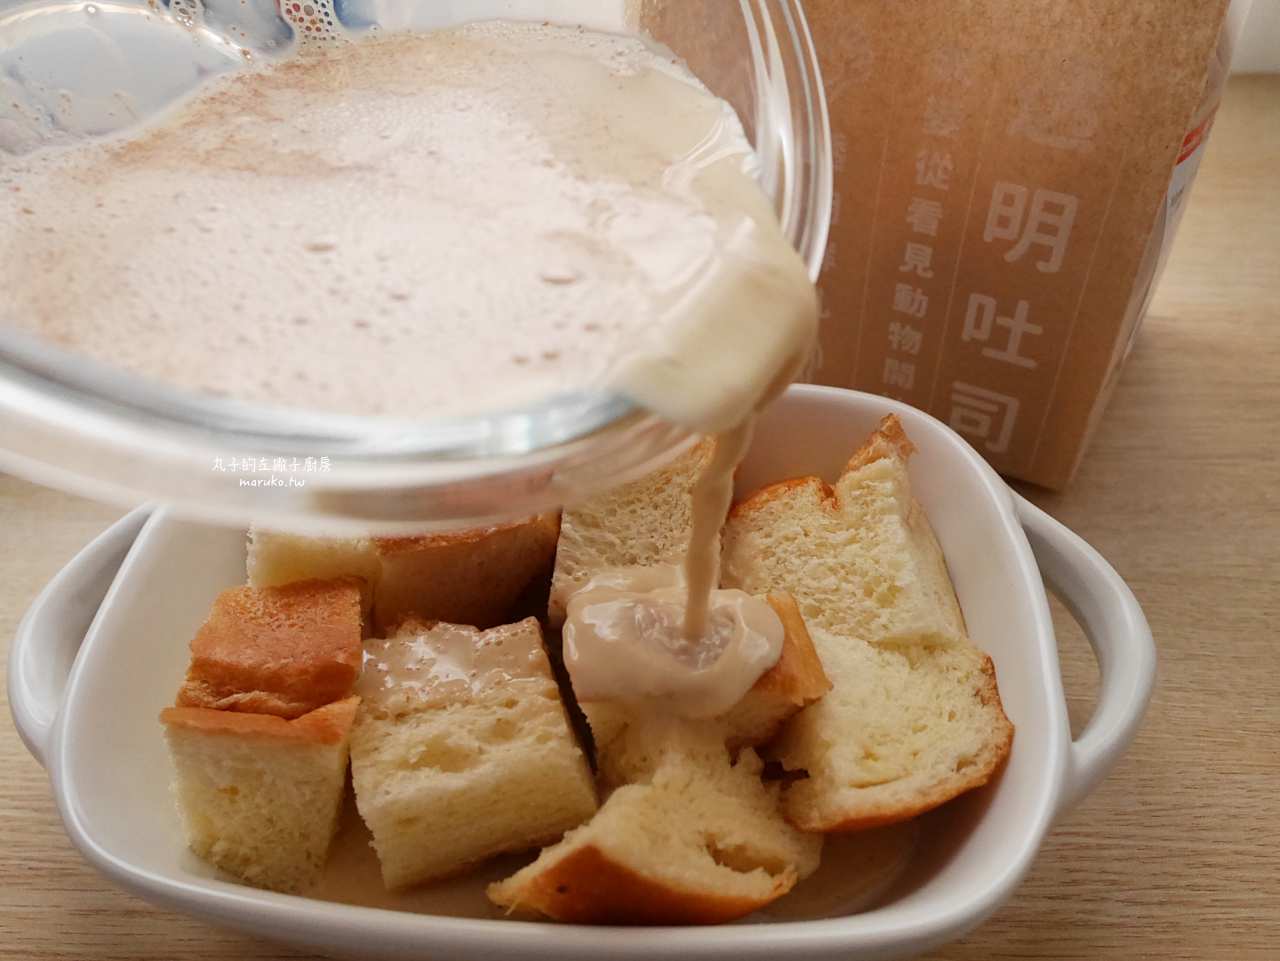 【食譜】楓糖肉桂烤布丁吐司 三樣食材簡單做烤布丁吐司，加上香草冰淇淋甜蜜下午茶！ @Maruko與美食有個約會